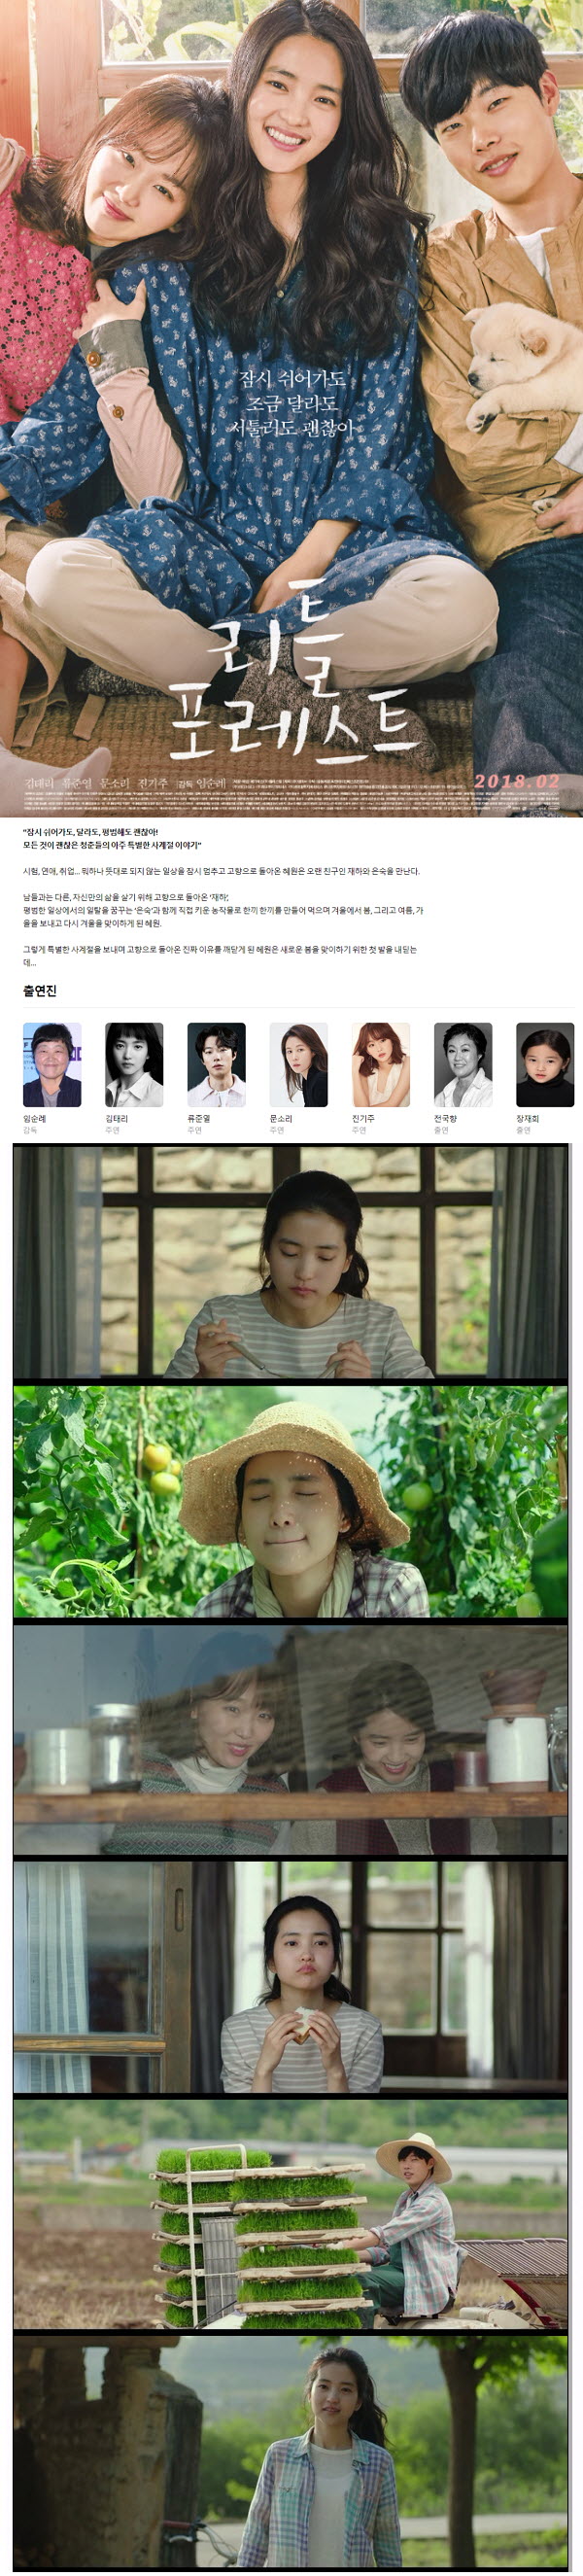 한국영화 [ 리틀 포레스트 ] 청춘들의 아주 특별한 사계절